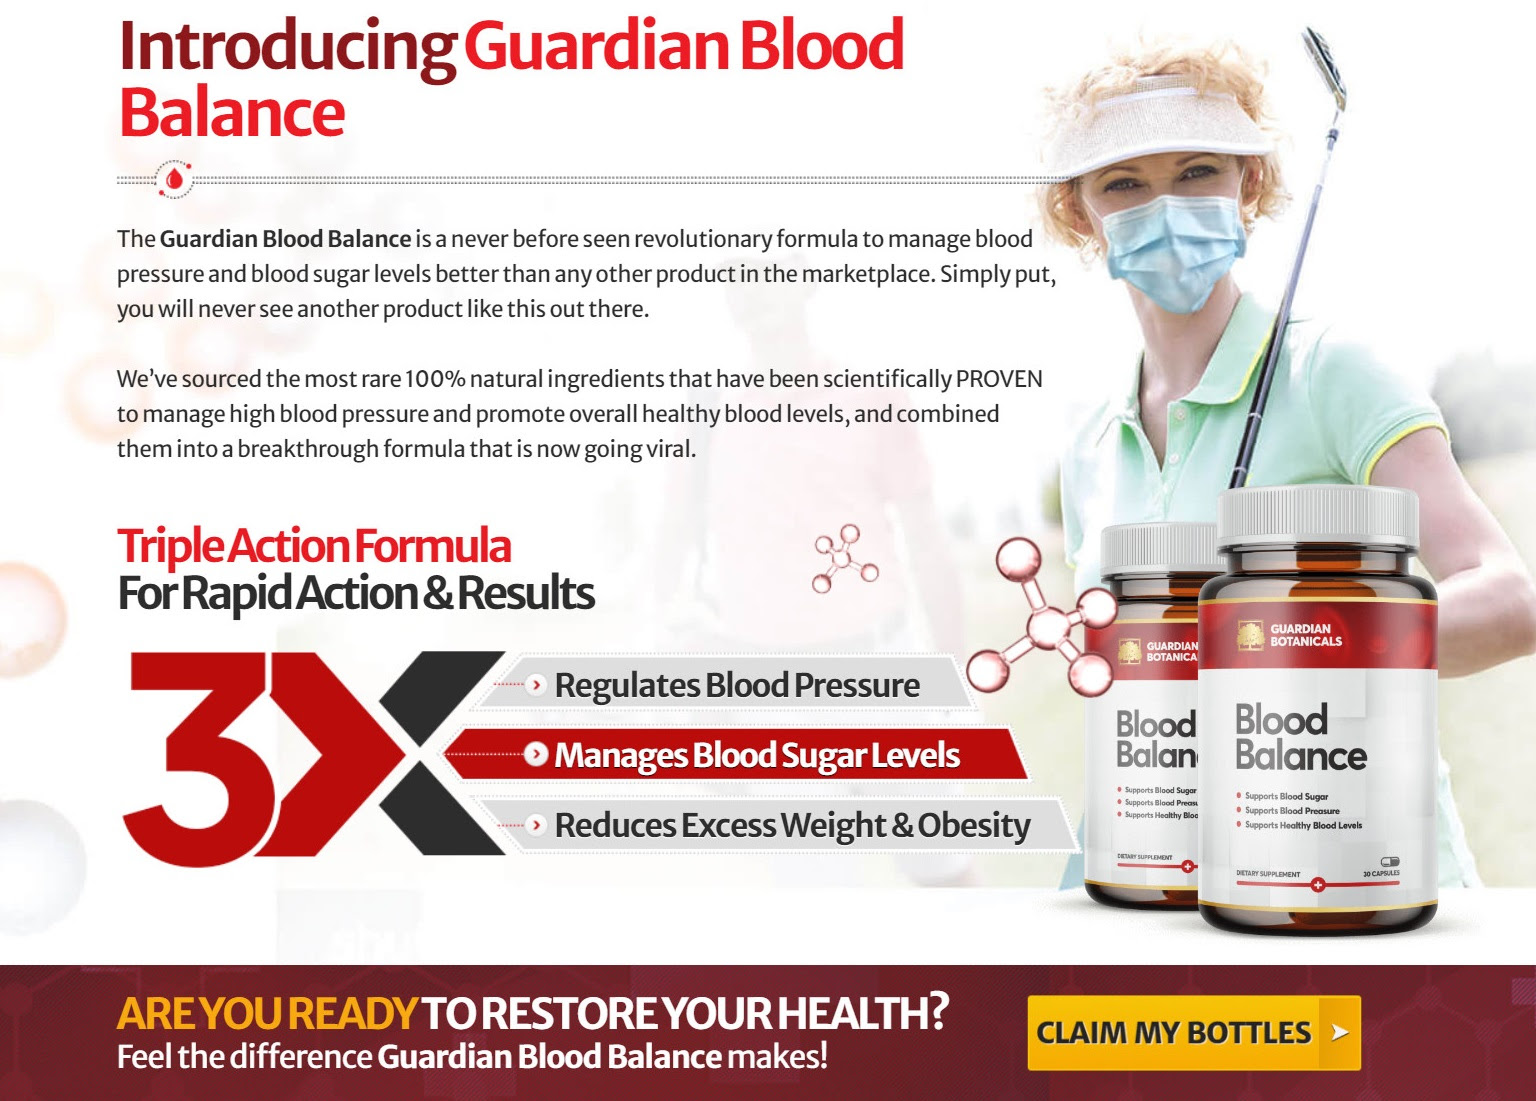 https://applyfortrials.xyz/offer/guardian-botanicals-blood-balance-int/